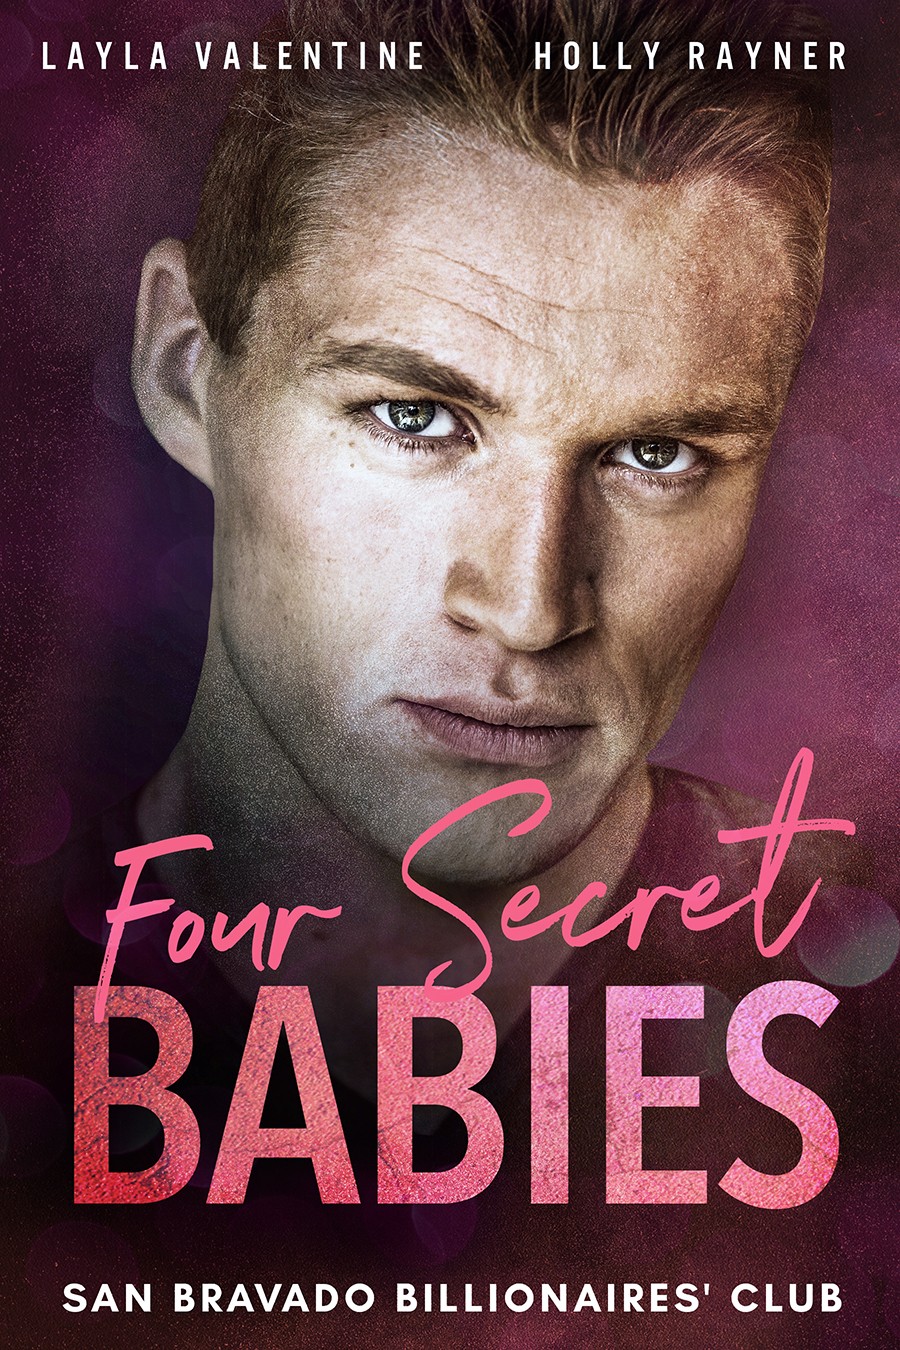 Four Secret Babies